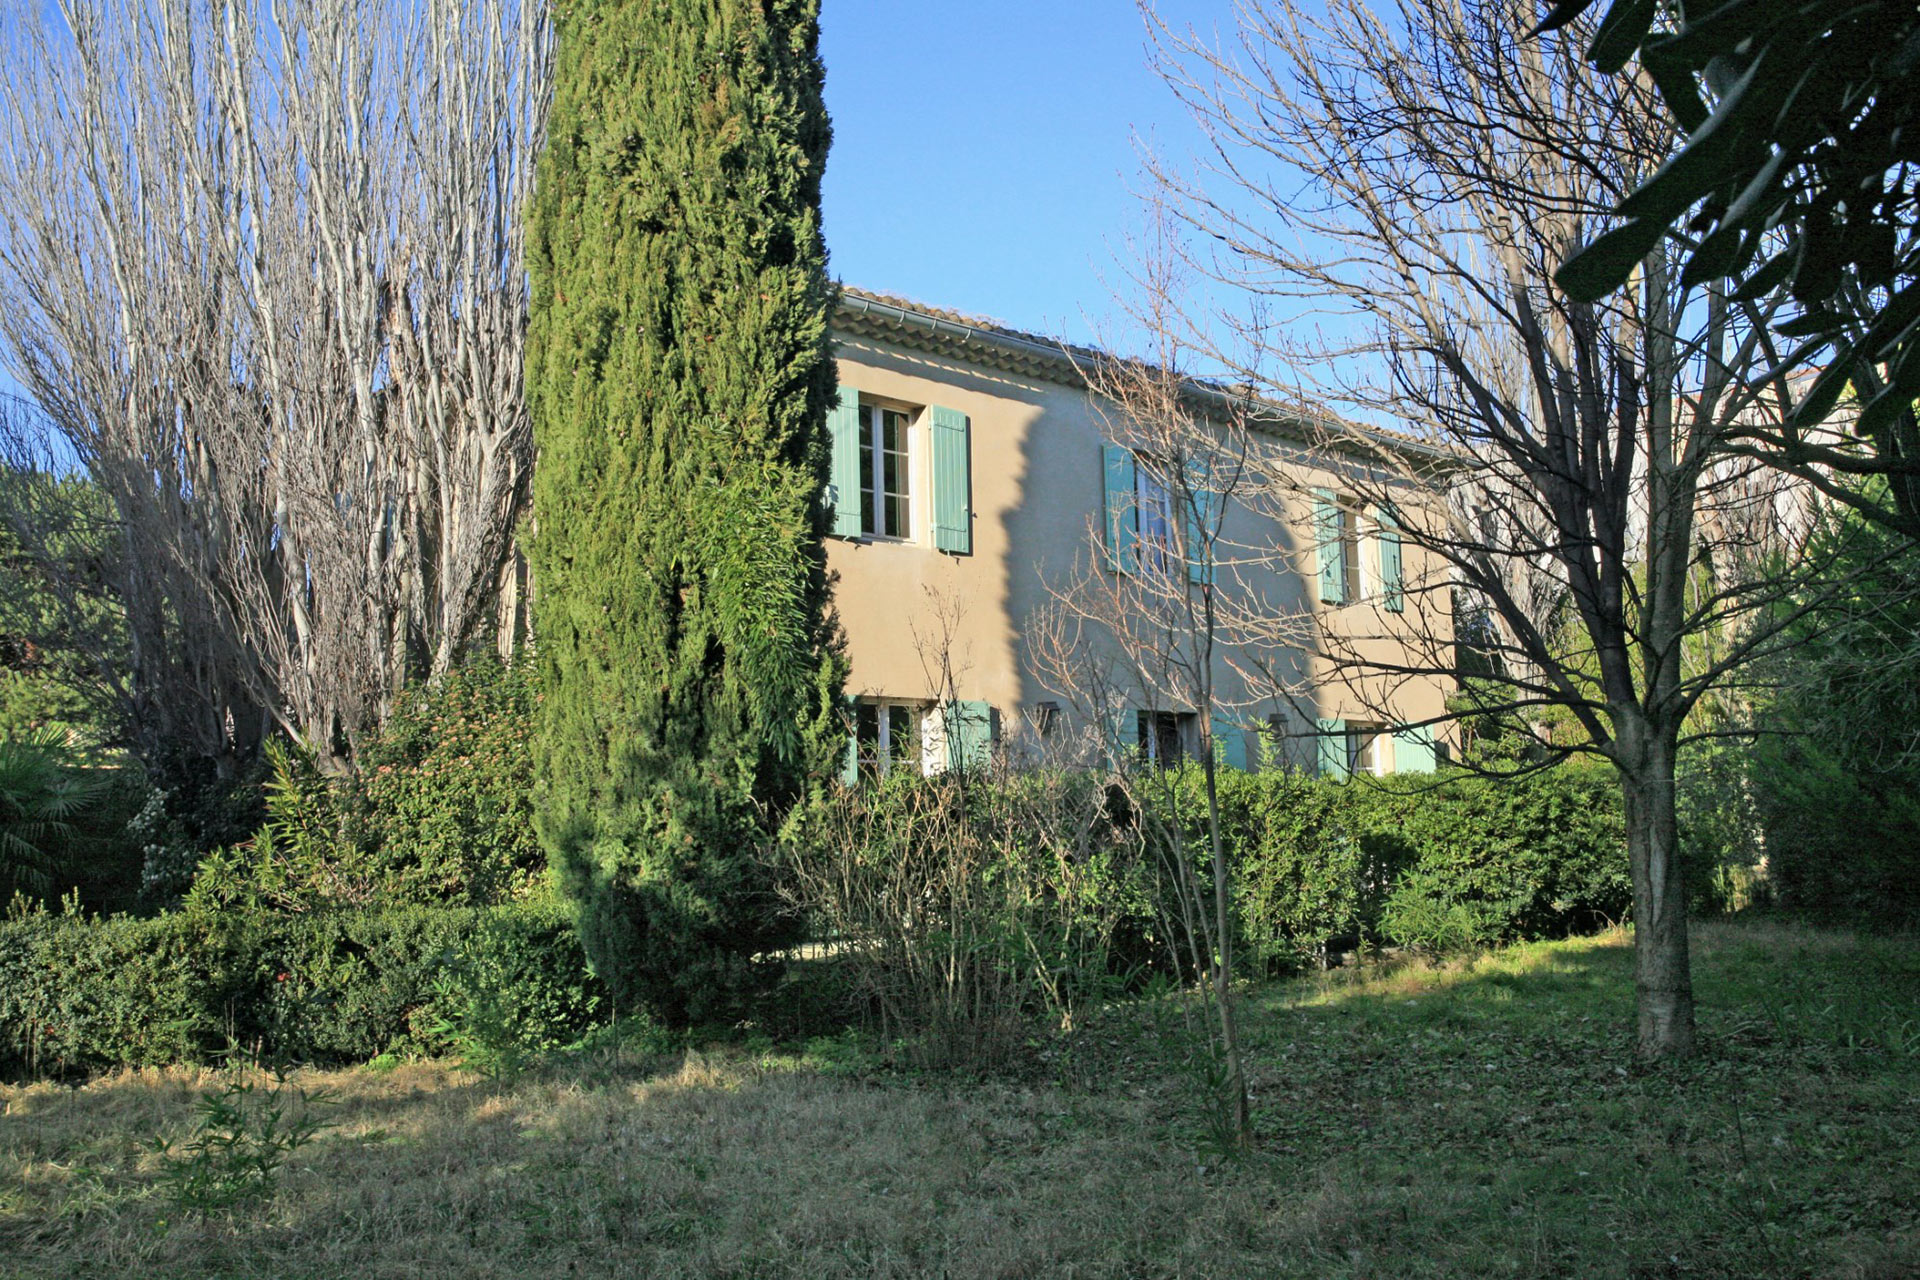 Vente En Provence, à vendre,  dans un quartier calme d'une ville très animée du Luberon, agréable maison de famille  avec jardin